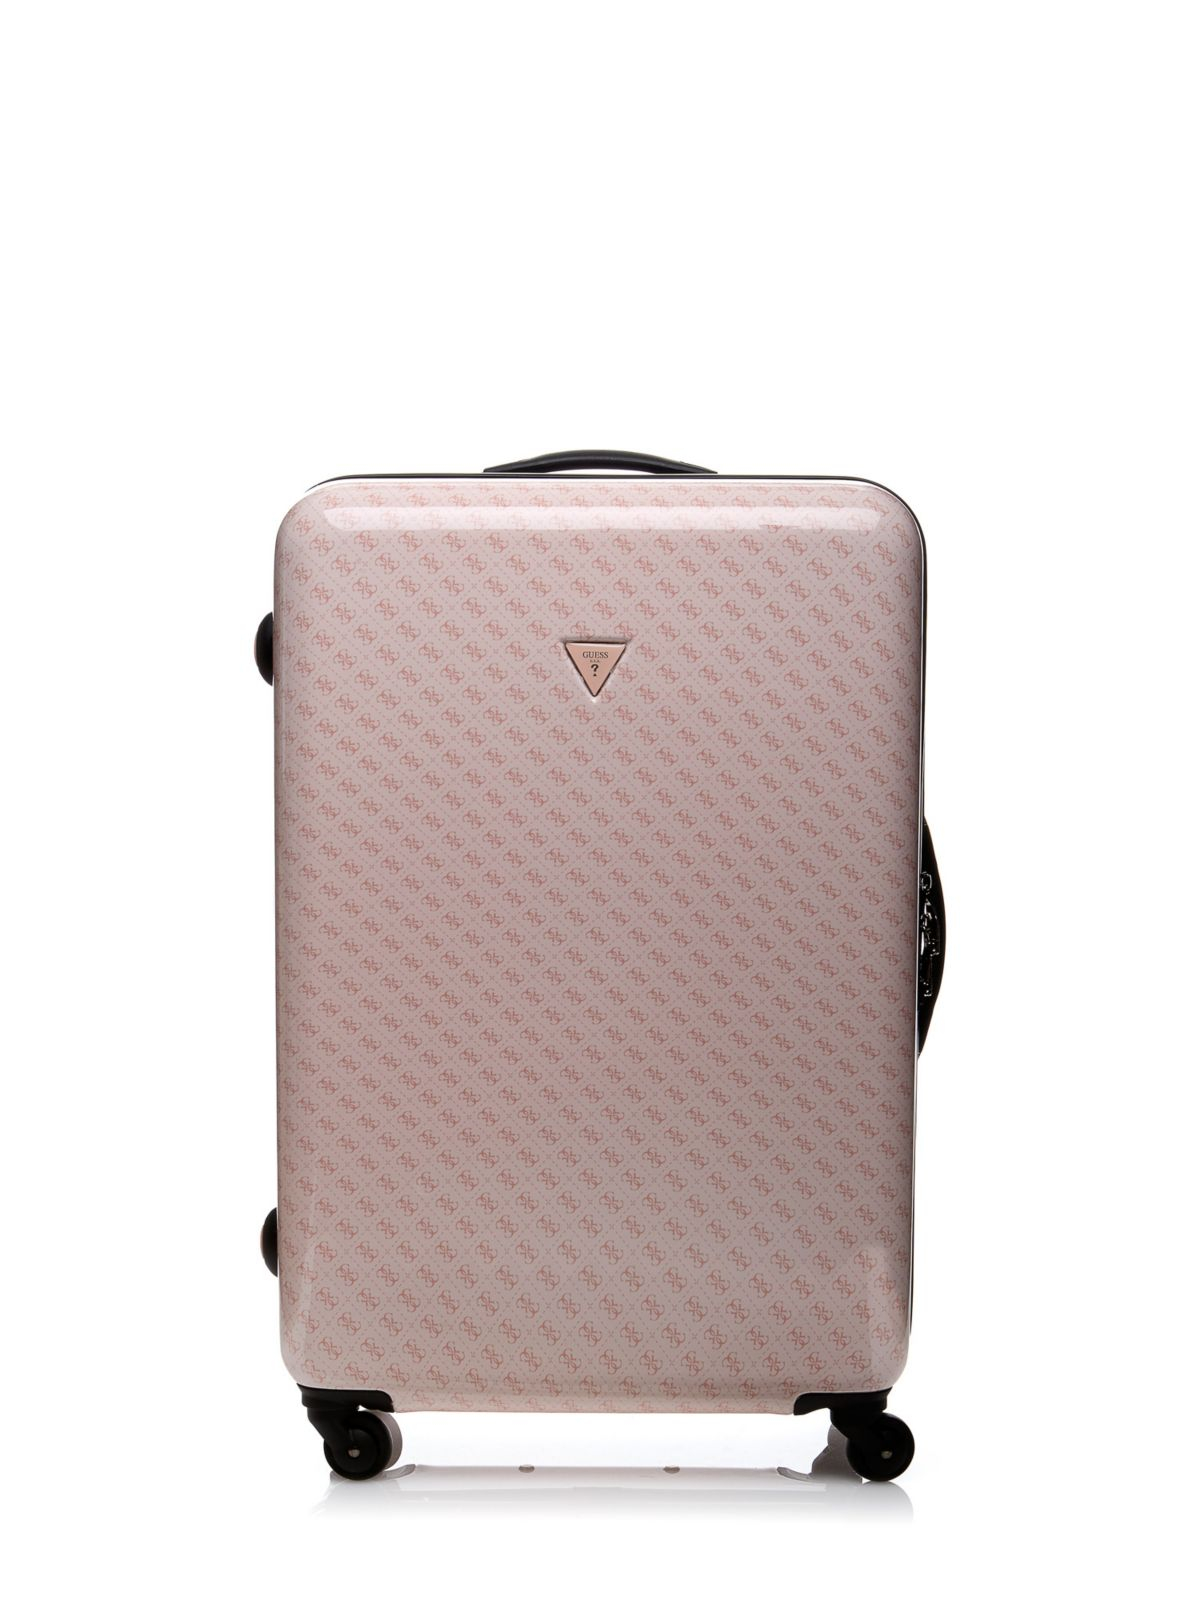 Guess Rose Gold Suitcase on Sale, SAVE 35% - highlandske.com